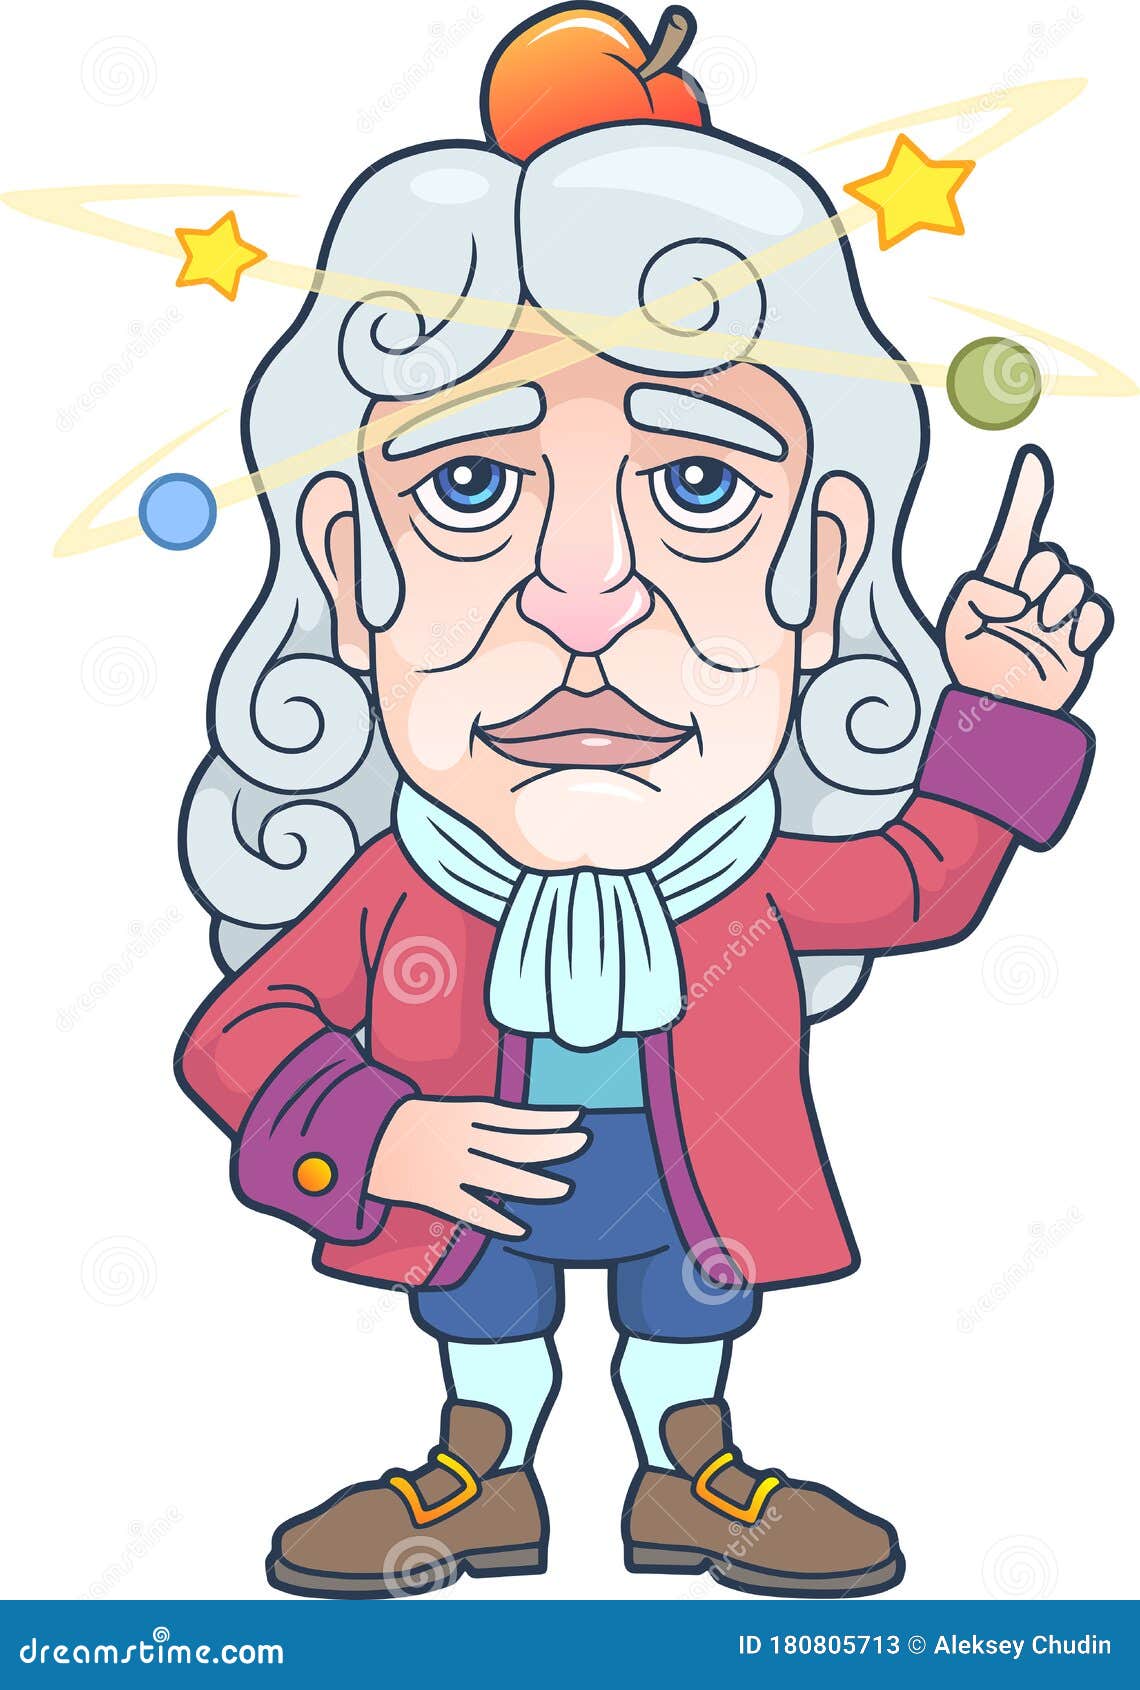 Isaac Newton Cartoon Vector | CartoonDealer.com #49807815